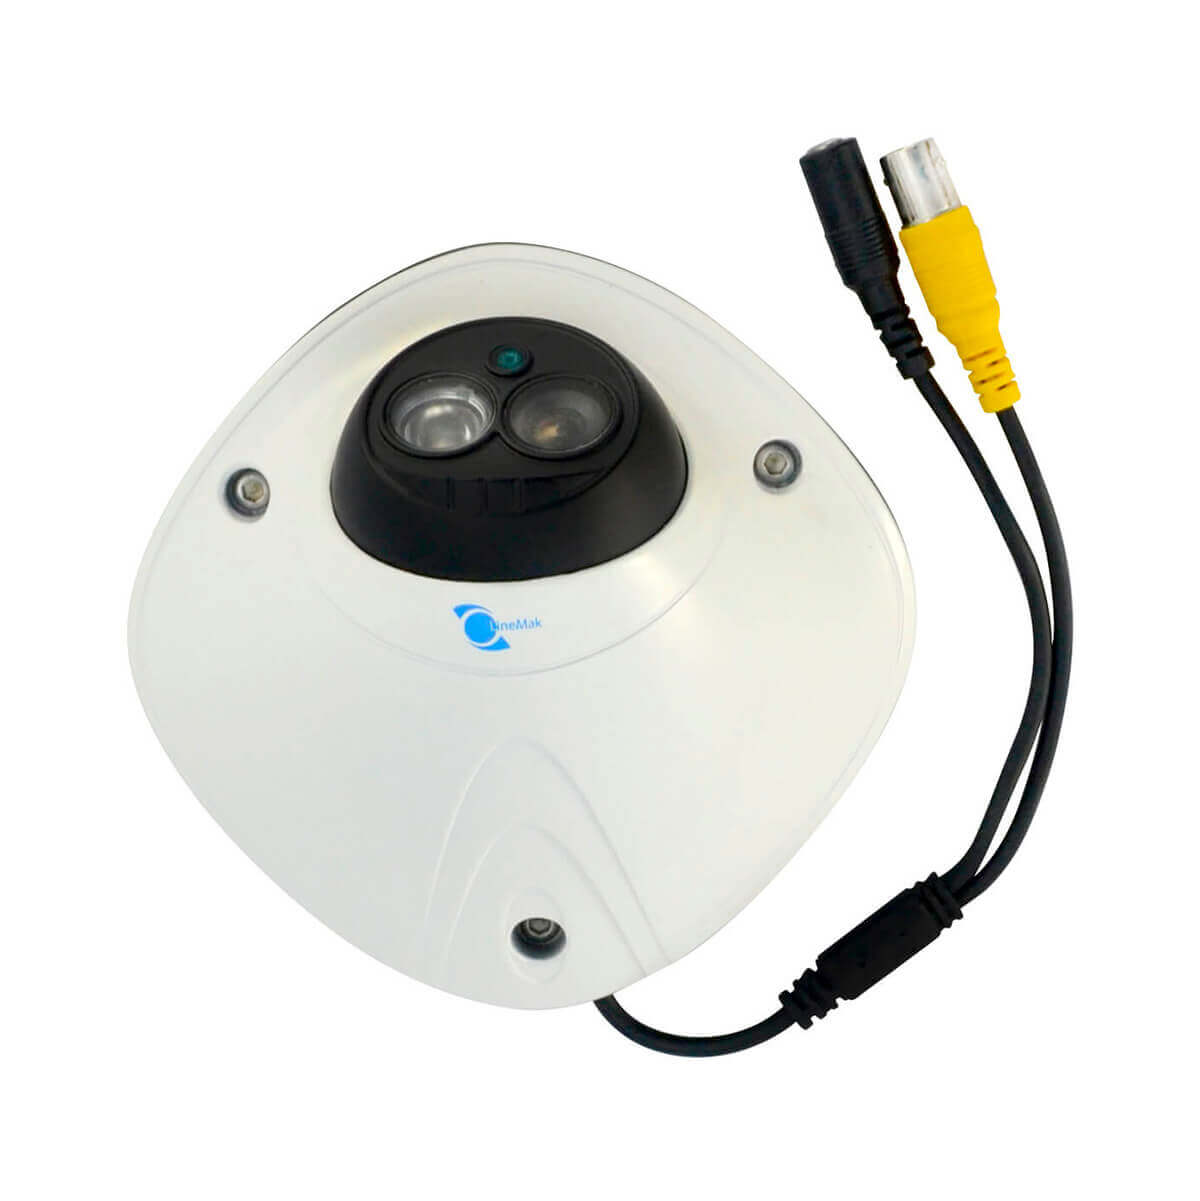 Camara tipo domo, Sensor CMOS 1/3, 900TVL, 1 LED Array, 15m IR, IR-CUT